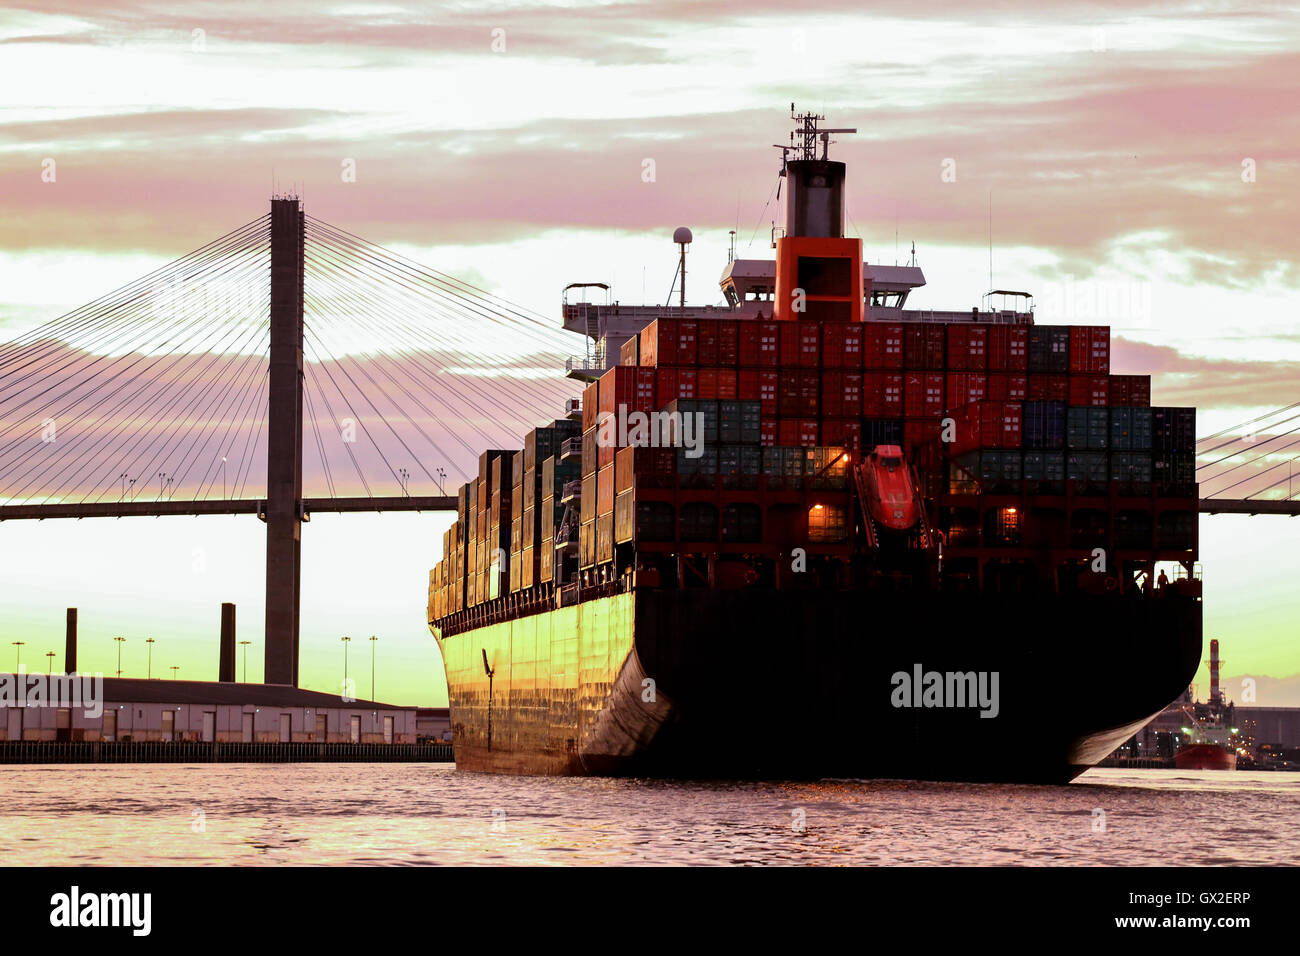 Gran buque mercante rumbo a puerto en el río Savannah, USA. Foto de stock